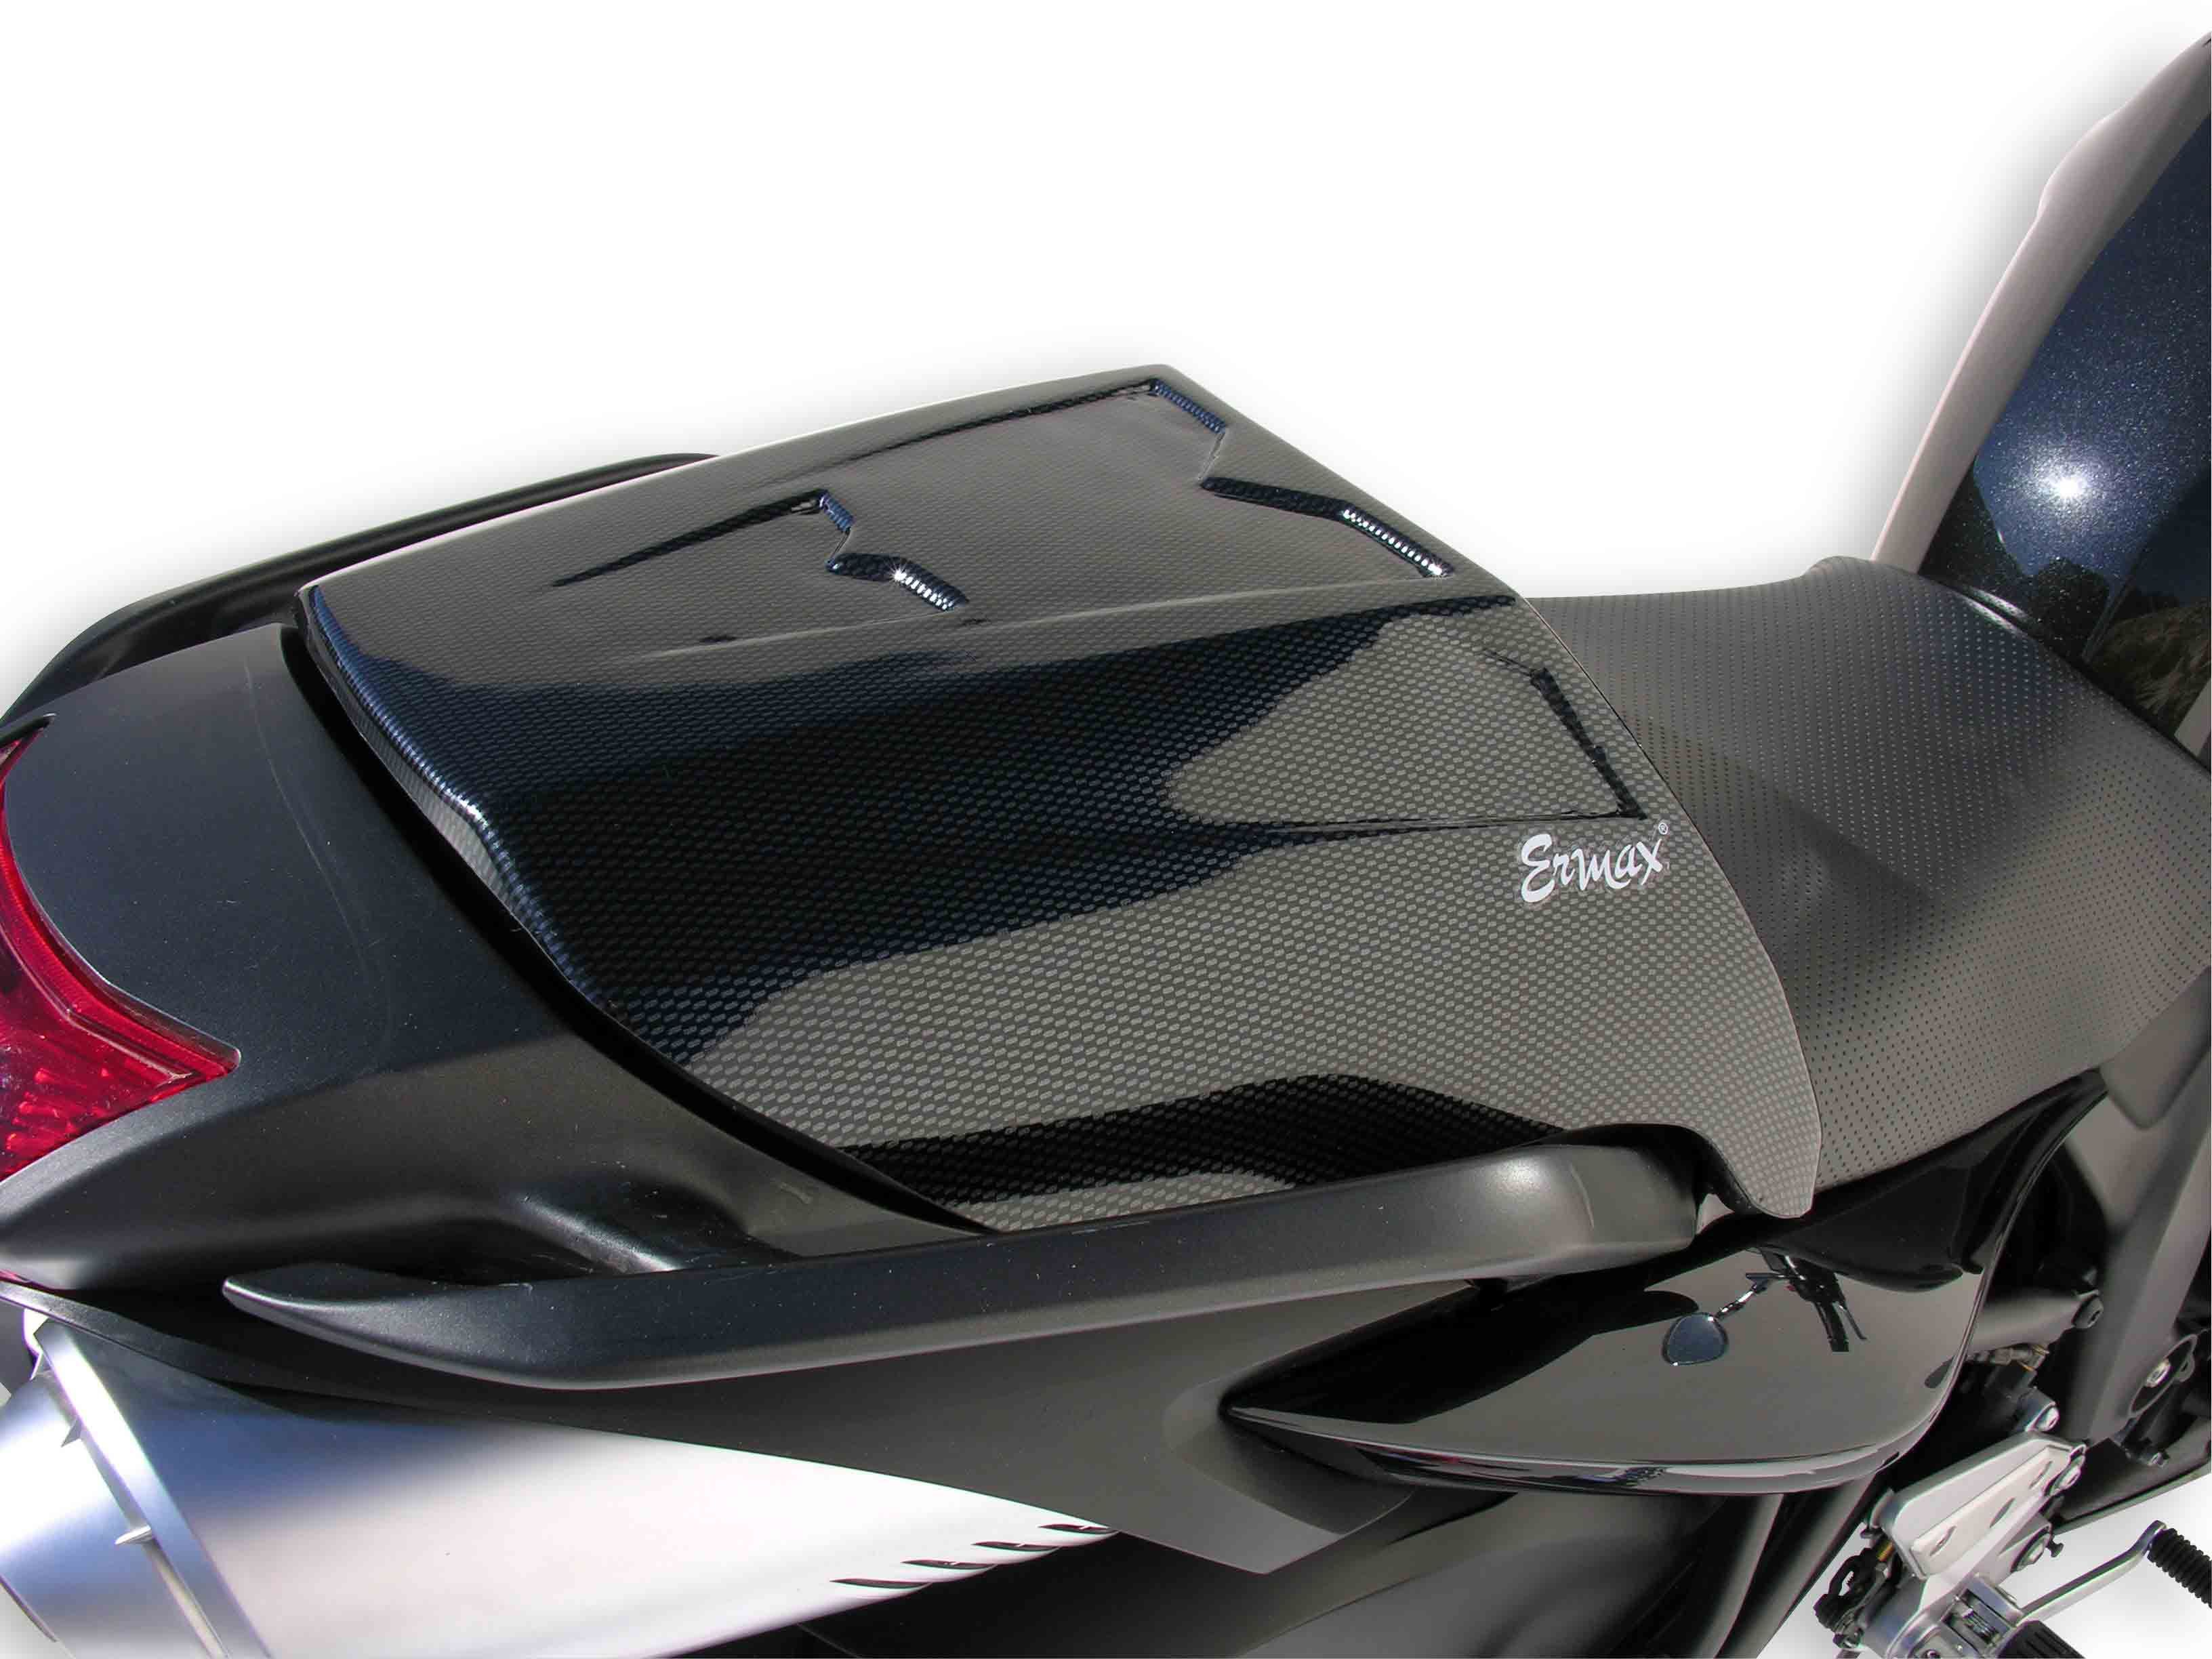 pour Yamaha FZ6 FAZER 600 Housse DE Selle GIVI S210 Universal Waterproof Length.117CM Couverture DE SIÈGE pour Moto Scooter Bords ÉLASTIQUES Noir 